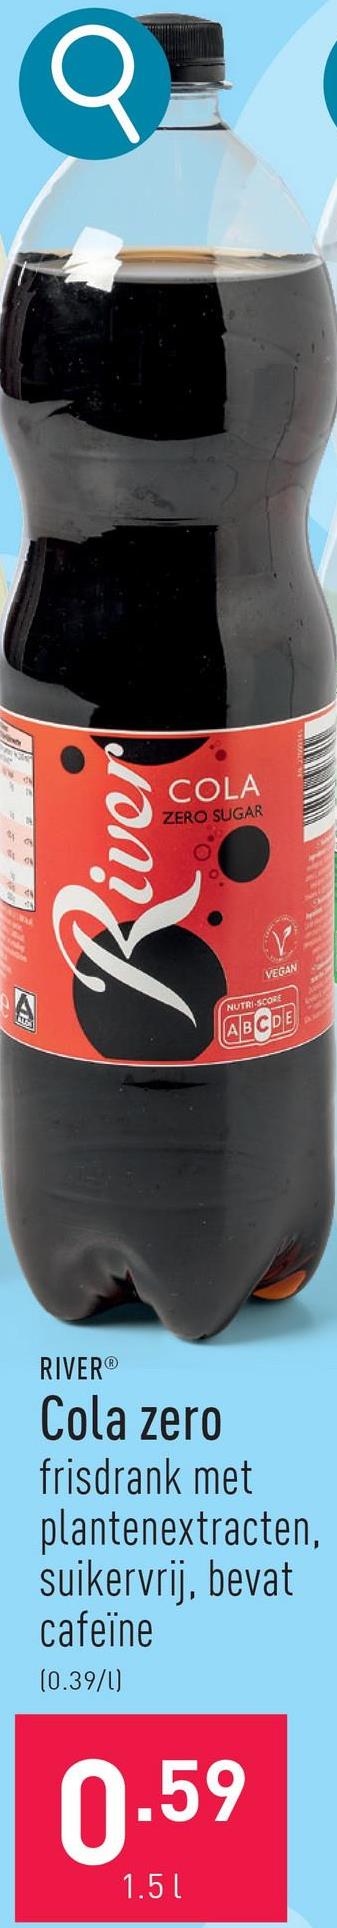 A
Q
VEGAN
NUTRI-SCORE
ABCDE
River
COLA
ZERO SUGAR
RIVER®
Cola zero
frisdrank met
plantenextracten,
suikervrij, bevat
cafeïne
(0.39/1)
0.59
1.5